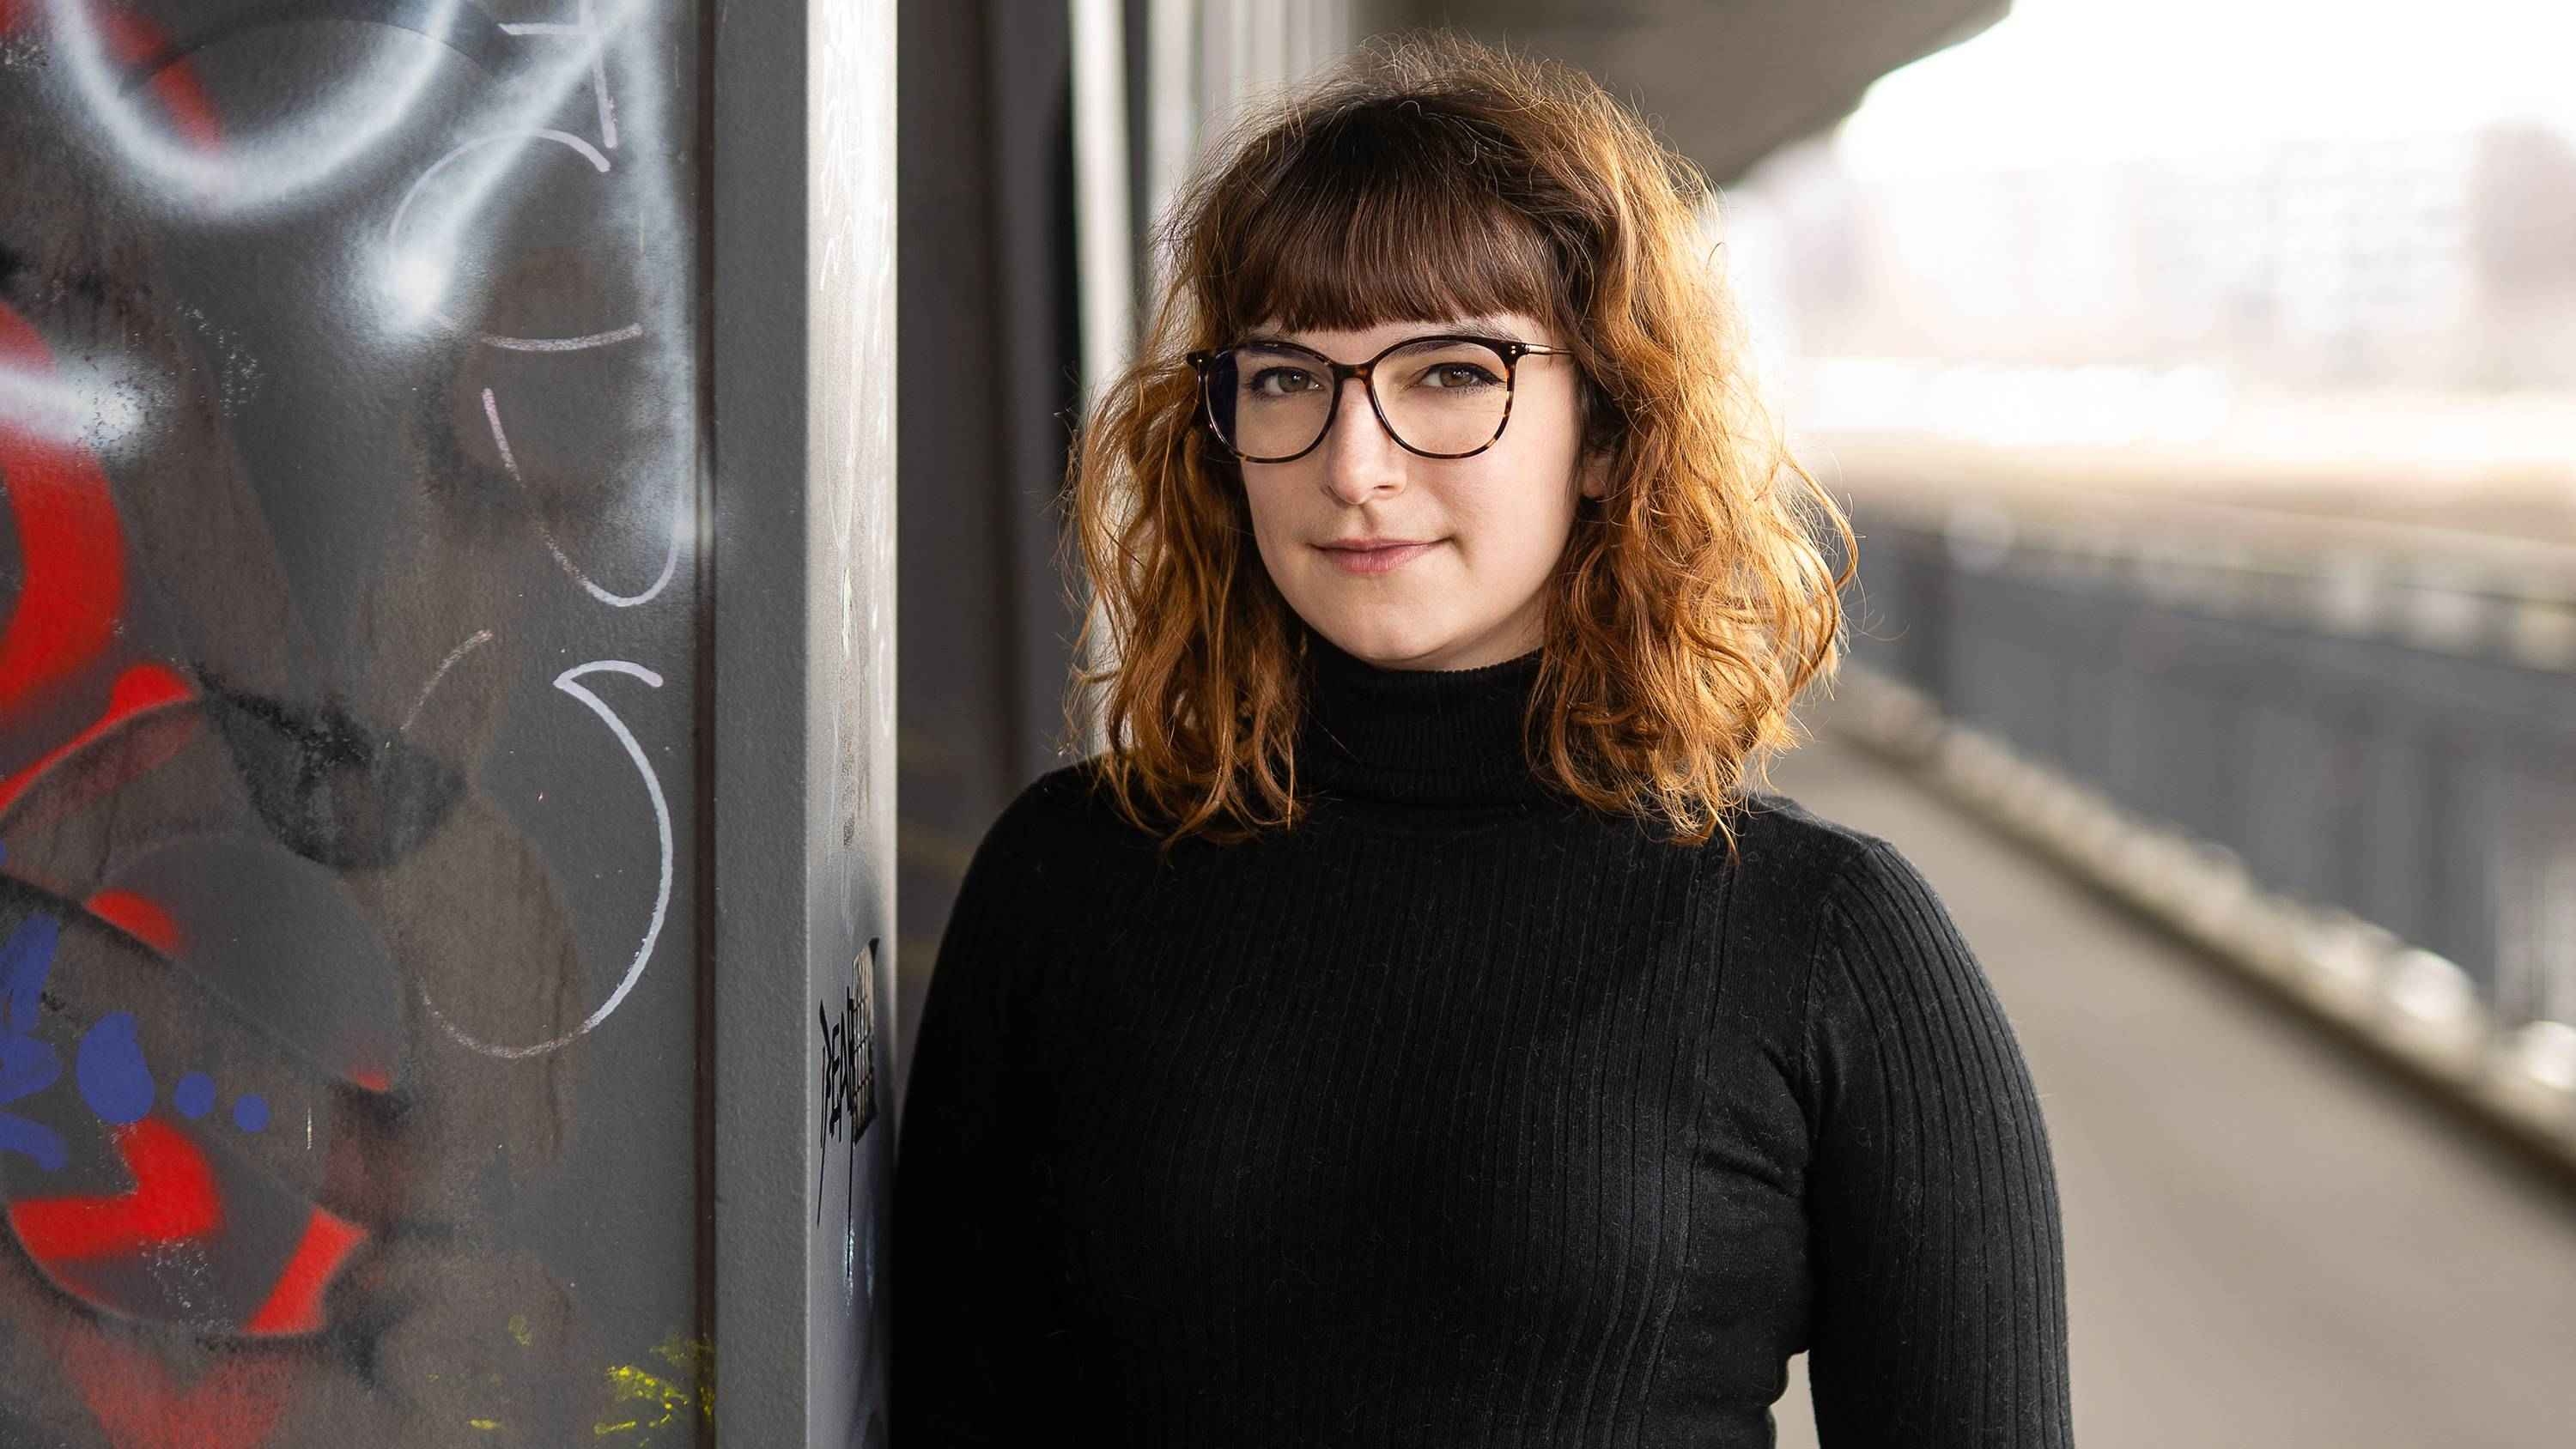 Amanda Förtsch joins Medienboard Berlin-Brandenburg